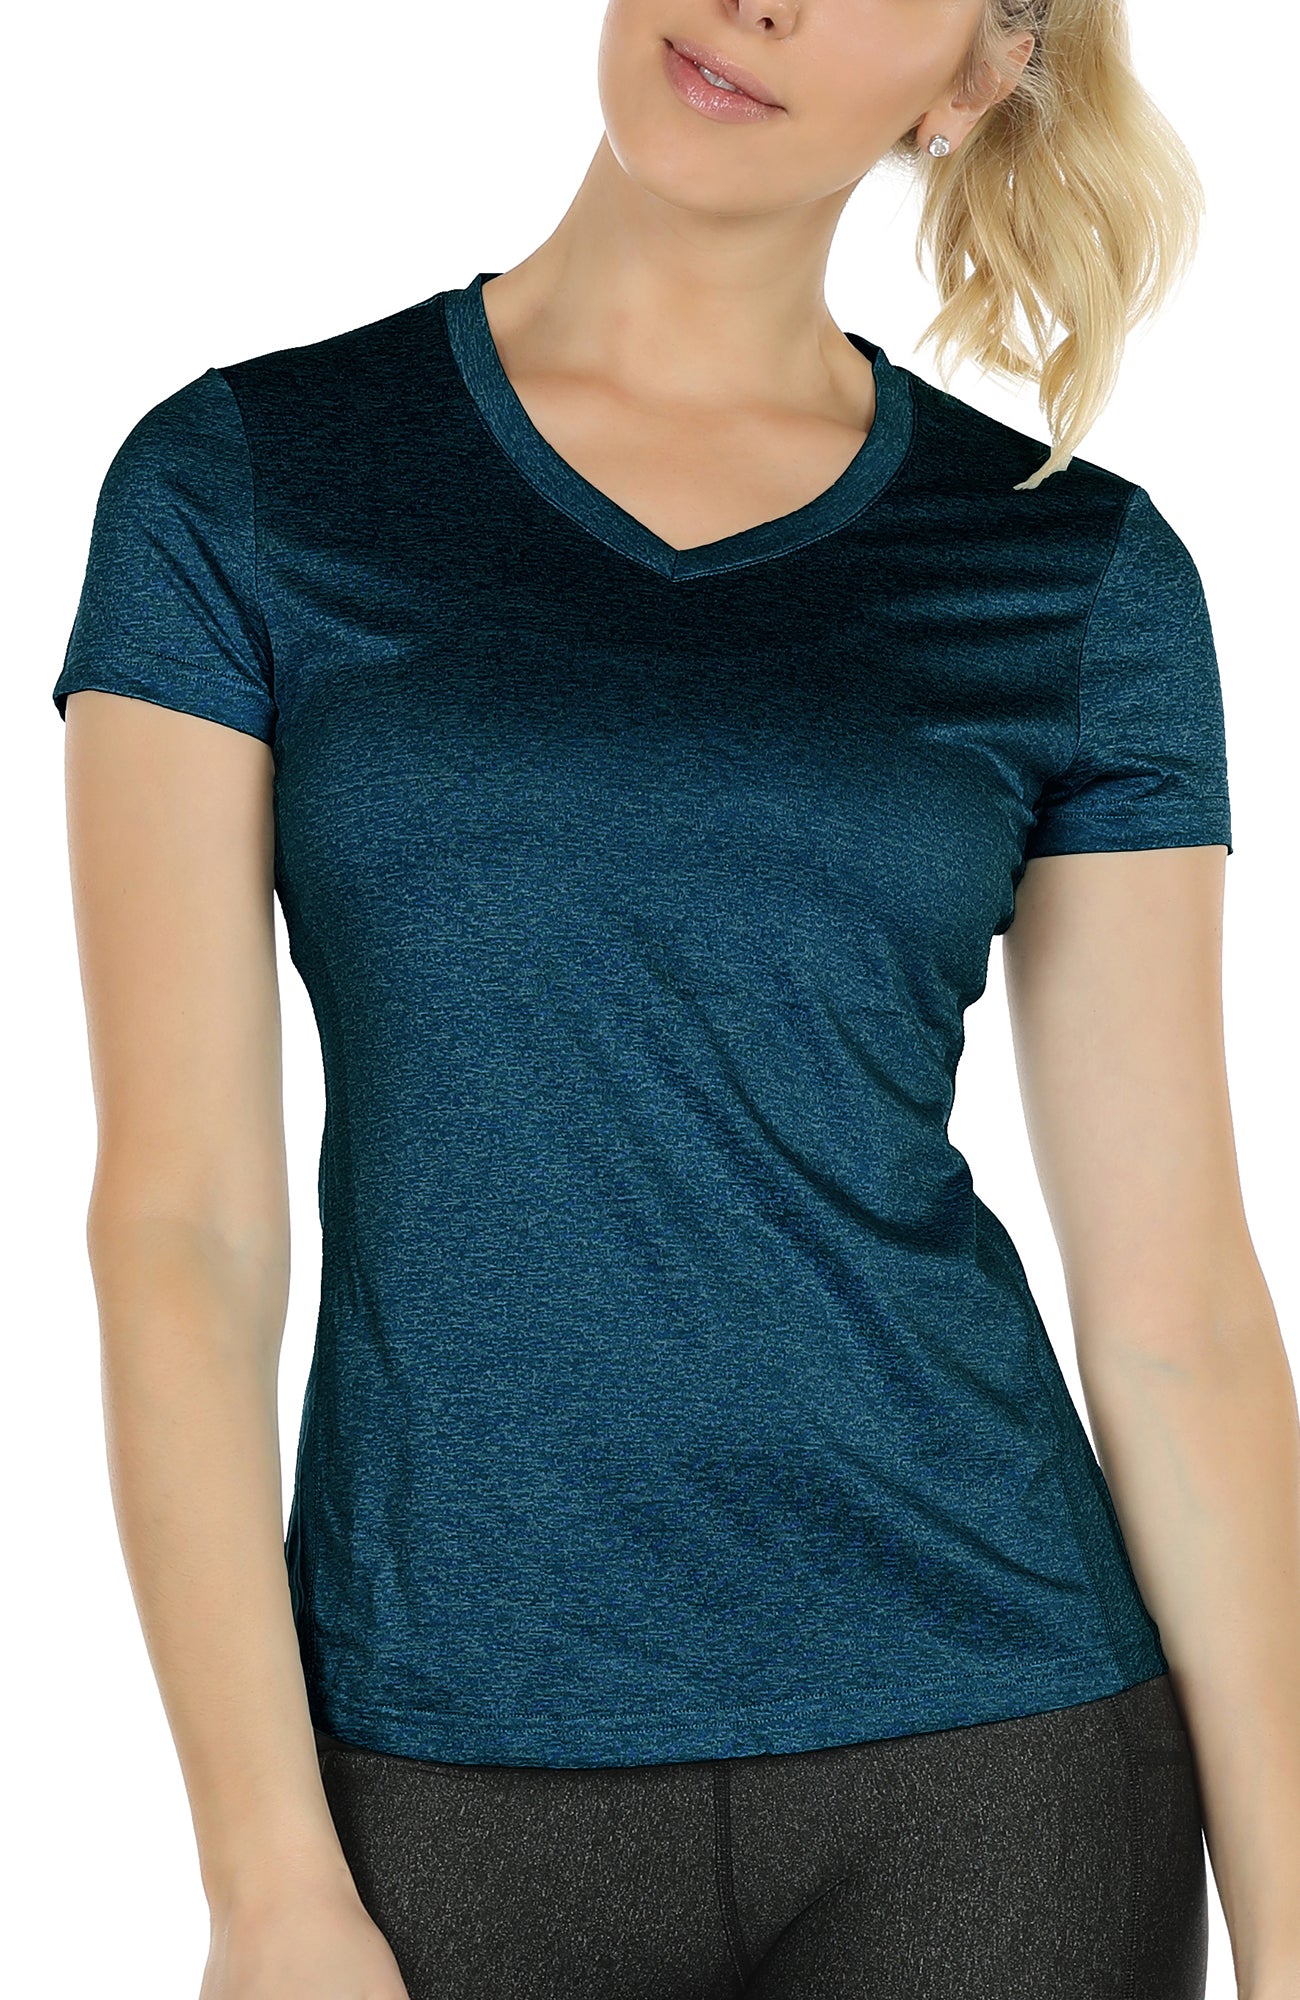 Deaviya Women's Sports T-Shirt Gym Tops, Short Sleeve Workout